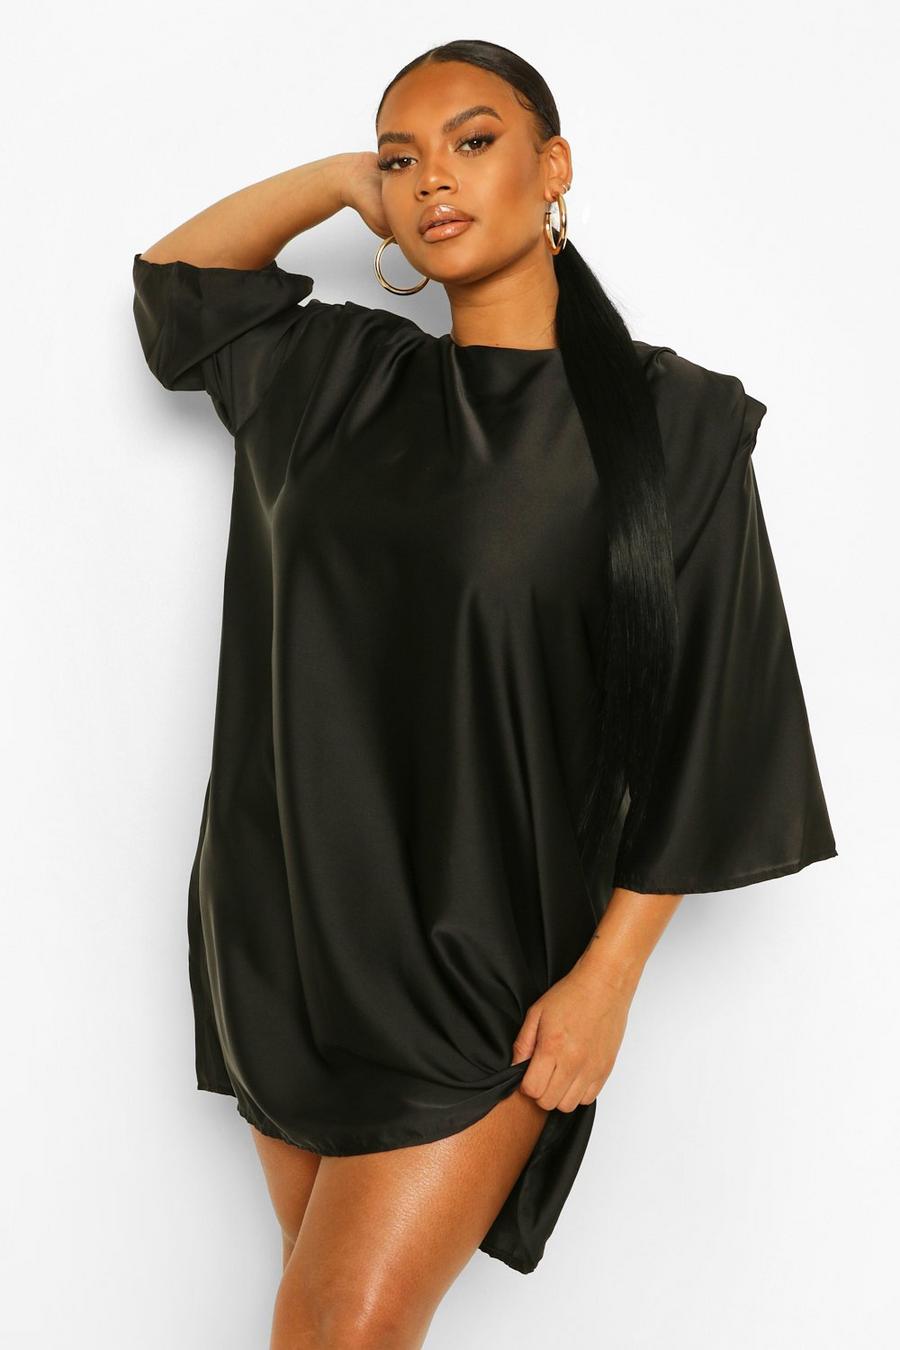 שחור שמלת שיפט מסאטן עם רפידות כתפיים ושרוולי 3/4 למידות גדולות image number 1